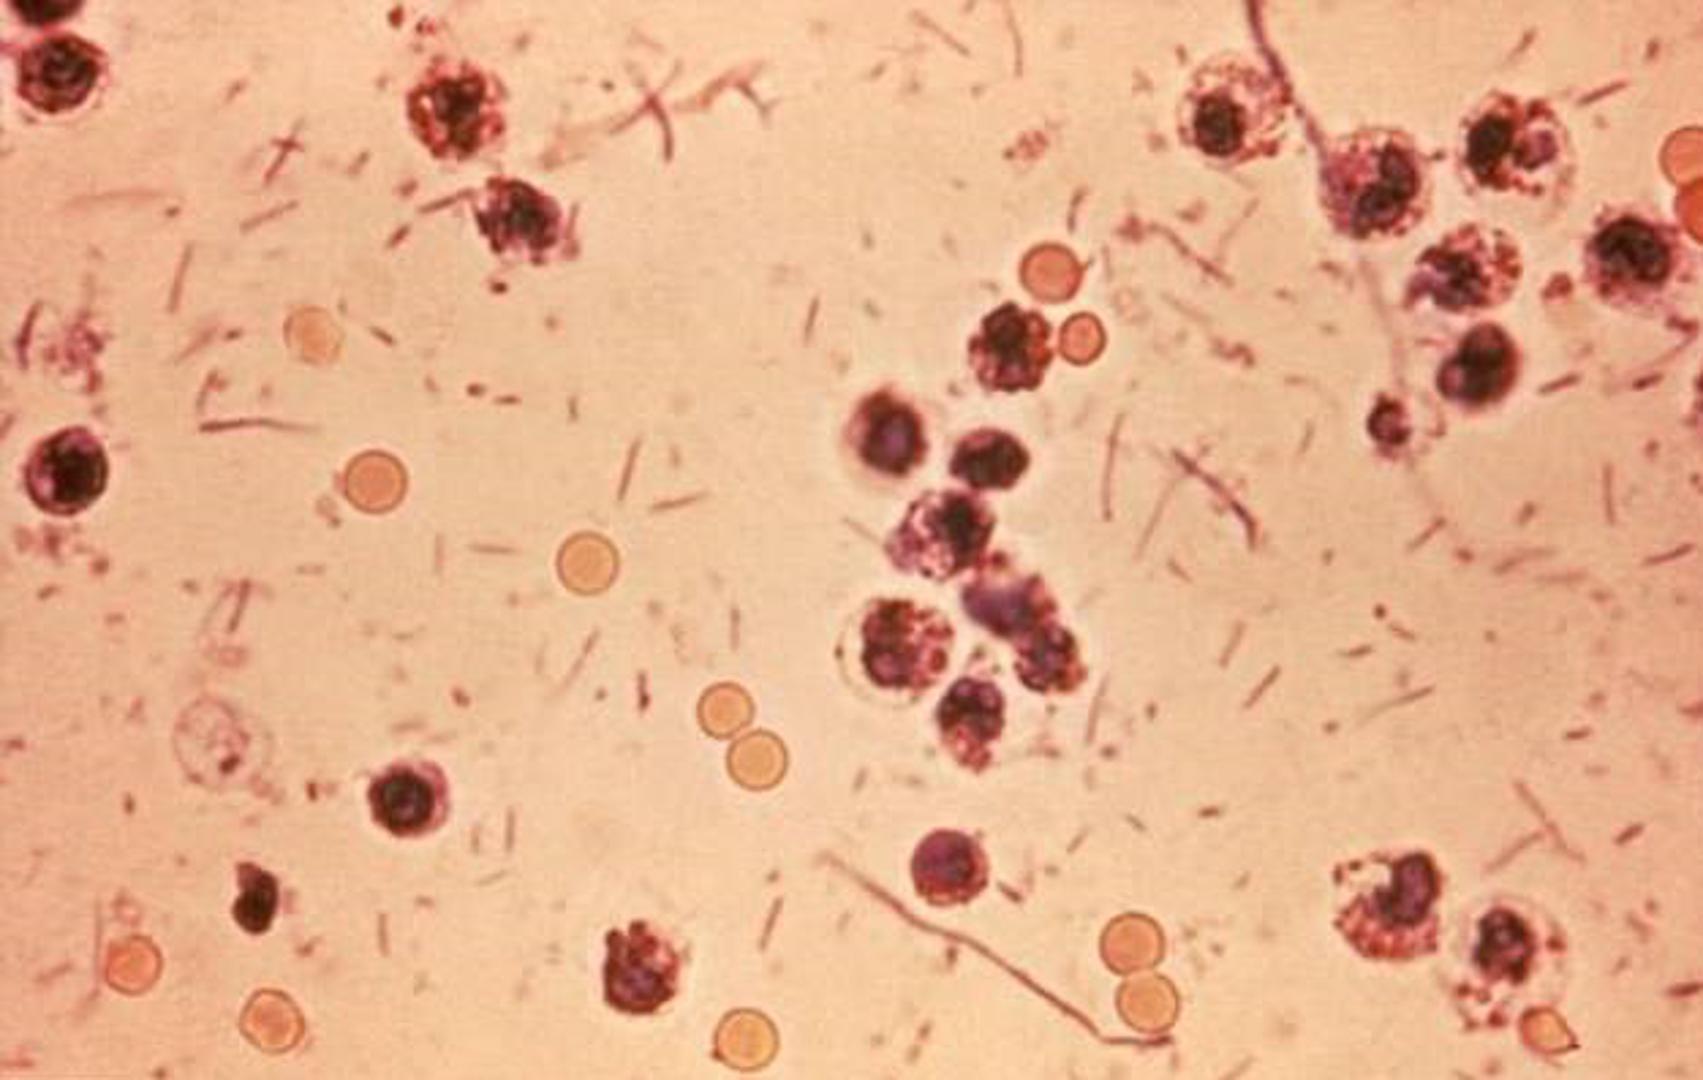 Šigela – Bakterija slična E. coli koja prouzroči od 74 tisuće do 600.000 smrti diljem svijeta svake godine. Manifestira se proljevima, a u stolici može biti krvi.